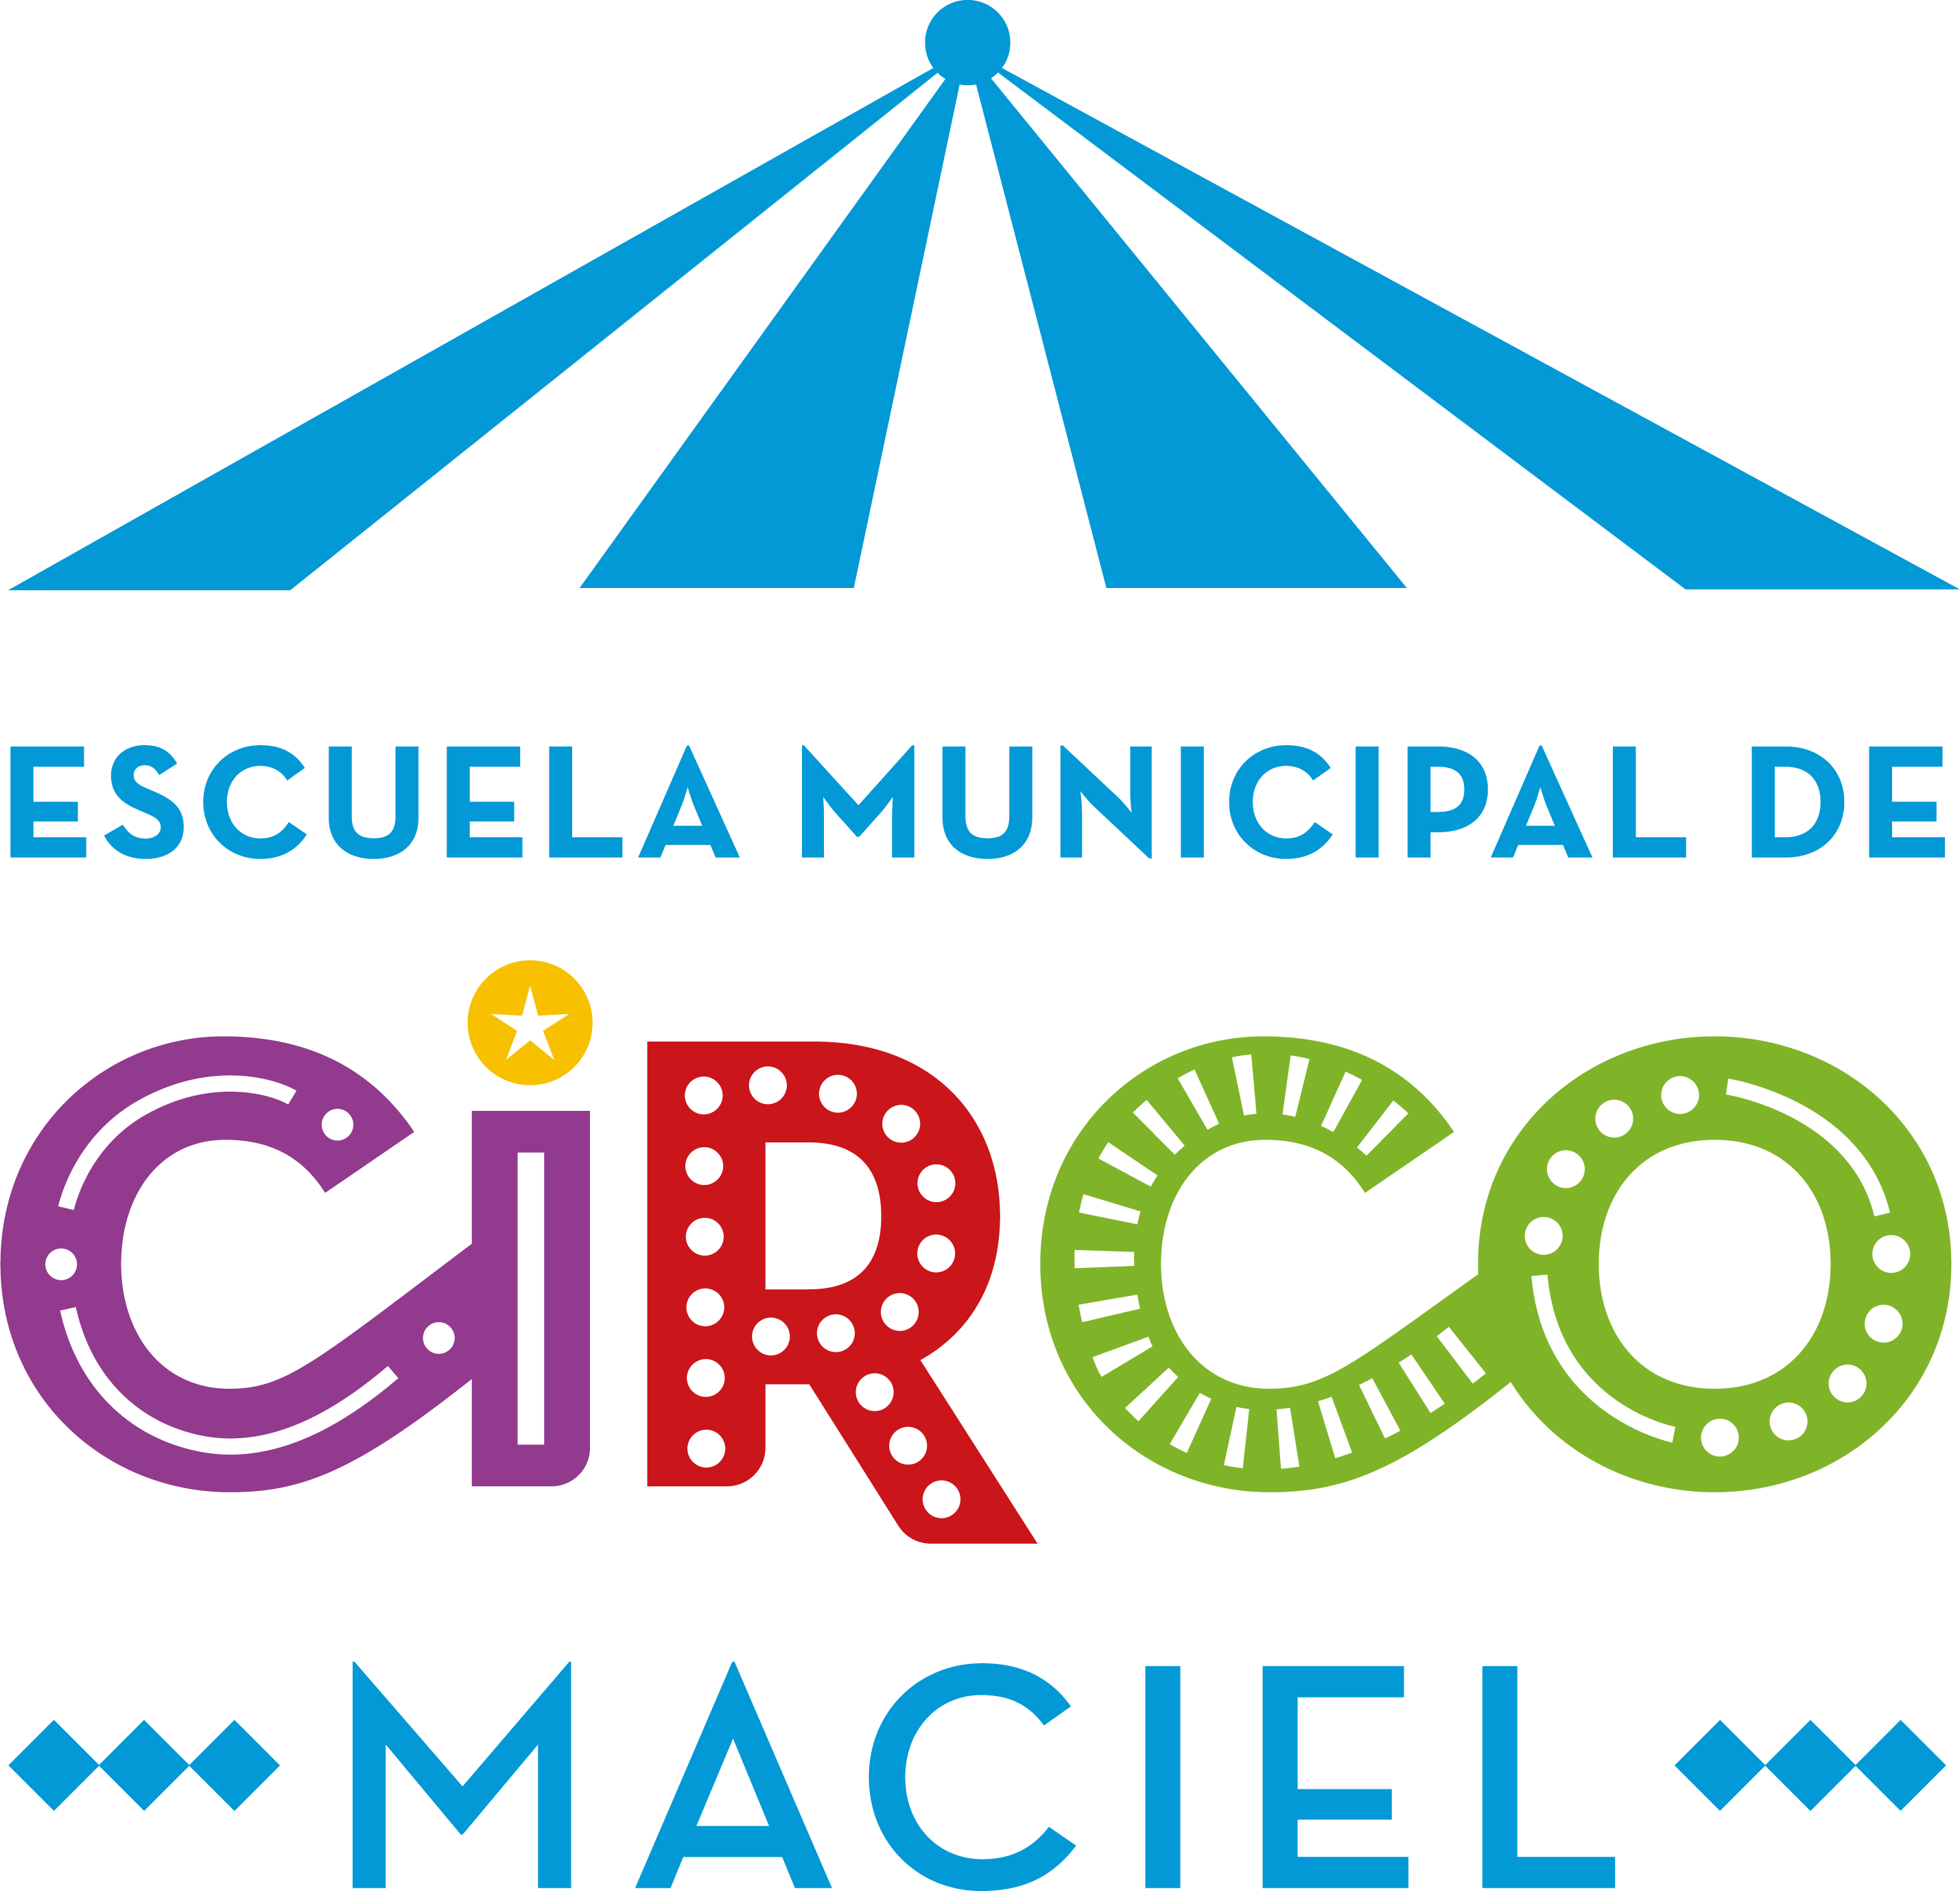 Escuela de Circo Maciel